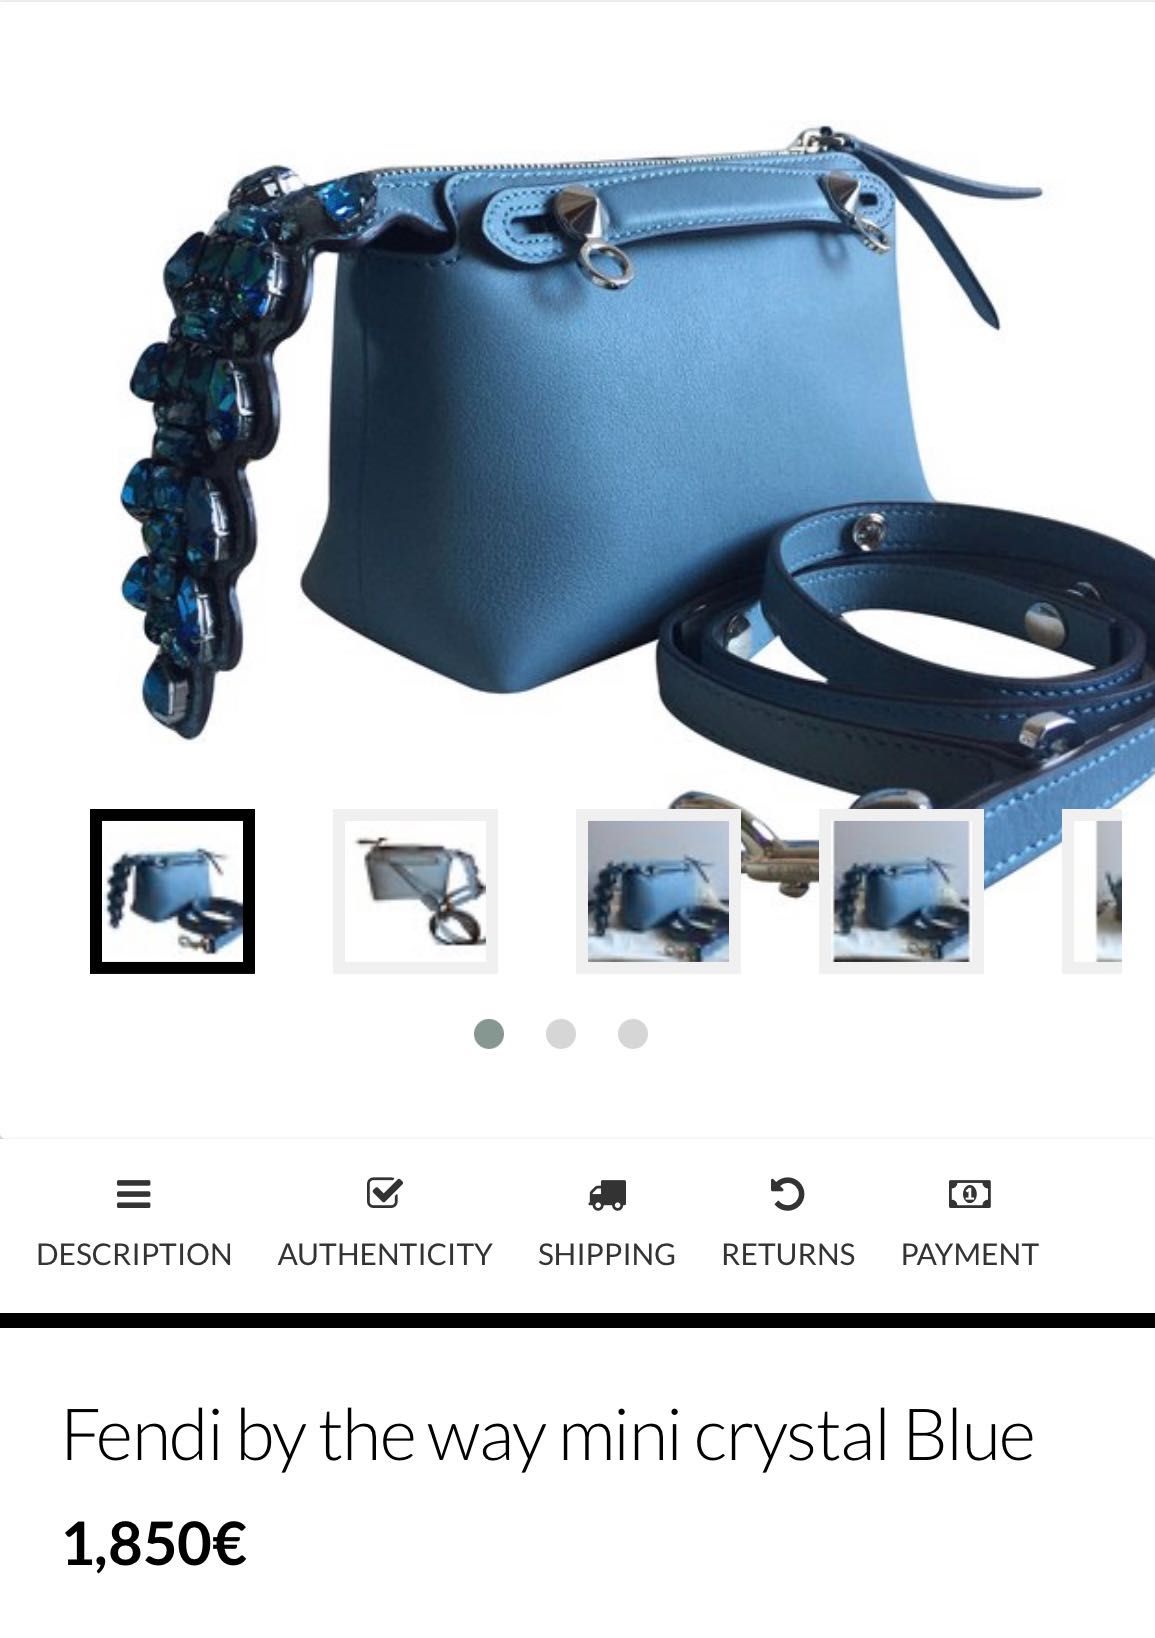 geantă originală Fendi Crystal Blue atât de frumoasă